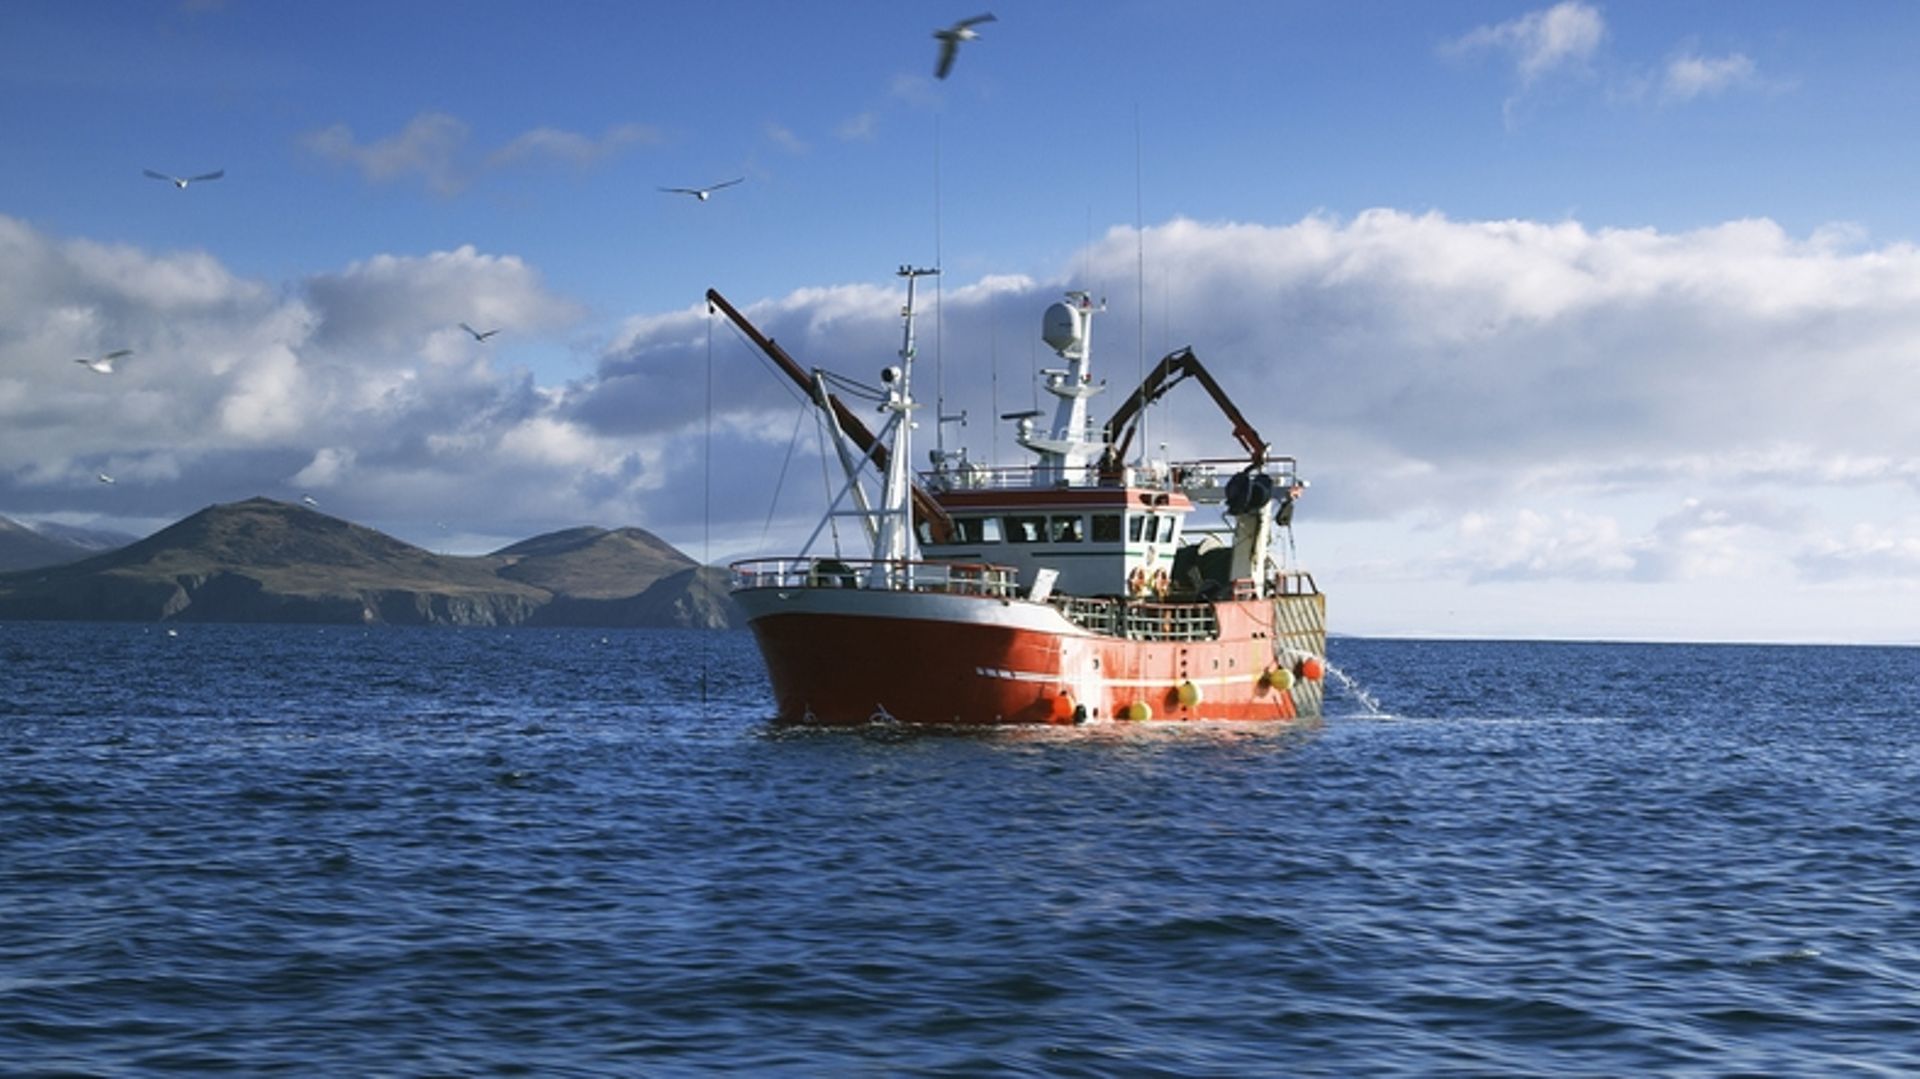 Ιρλανδοί ψαράδες: οι μεγάλοι χαμένοι του Brexit;